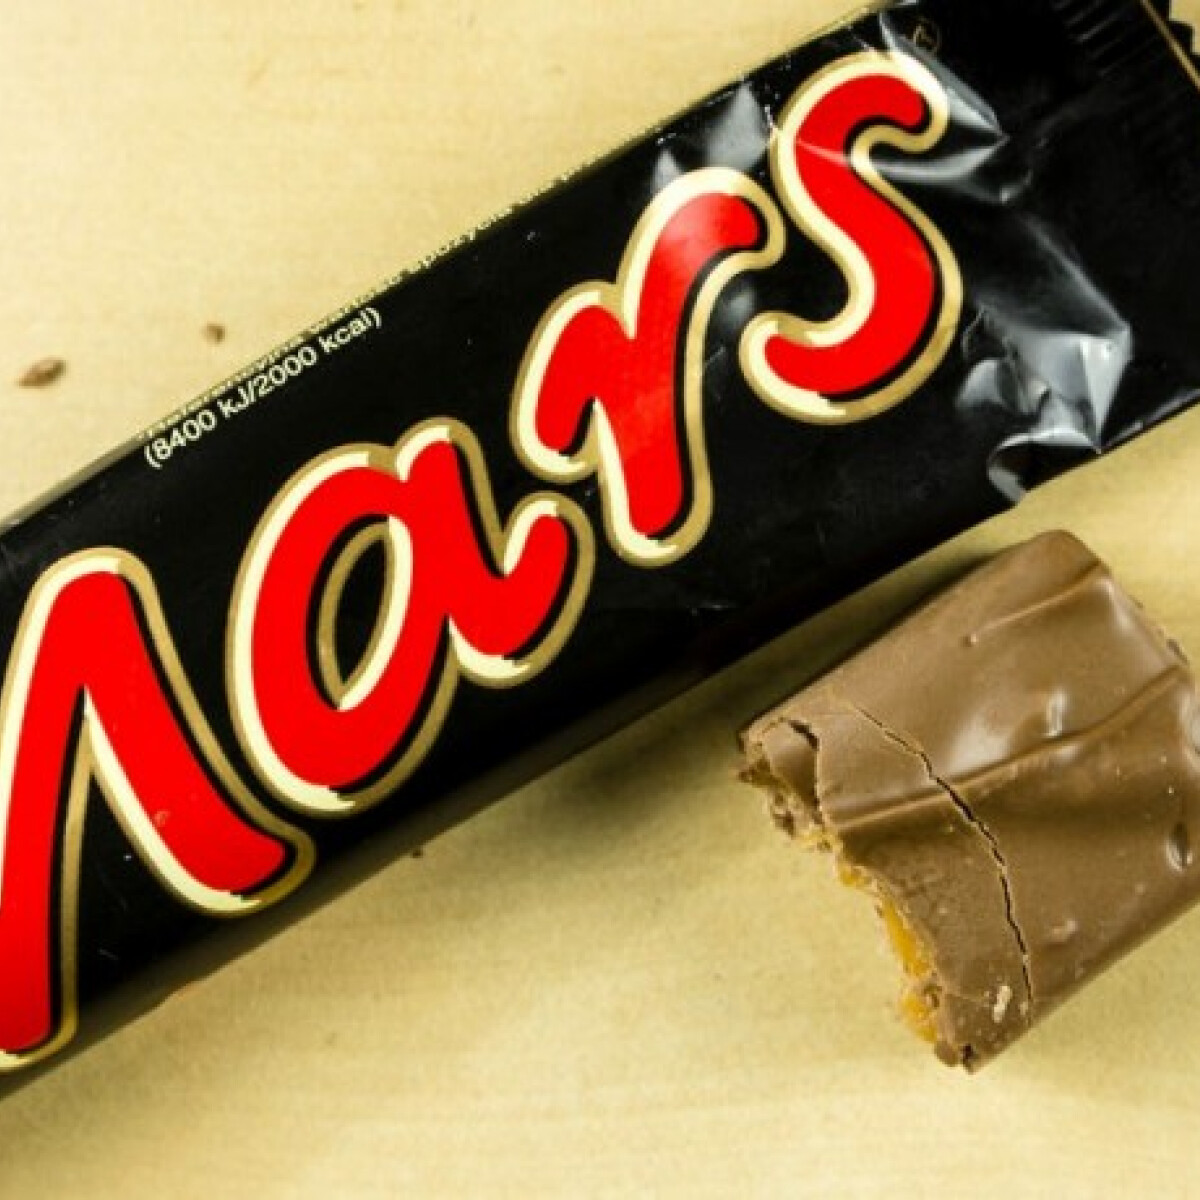 Megszűnhet a Mars csoki a Brexit miatt - Nagy Csokiválság fenyegeti az Egyesült Királyságot